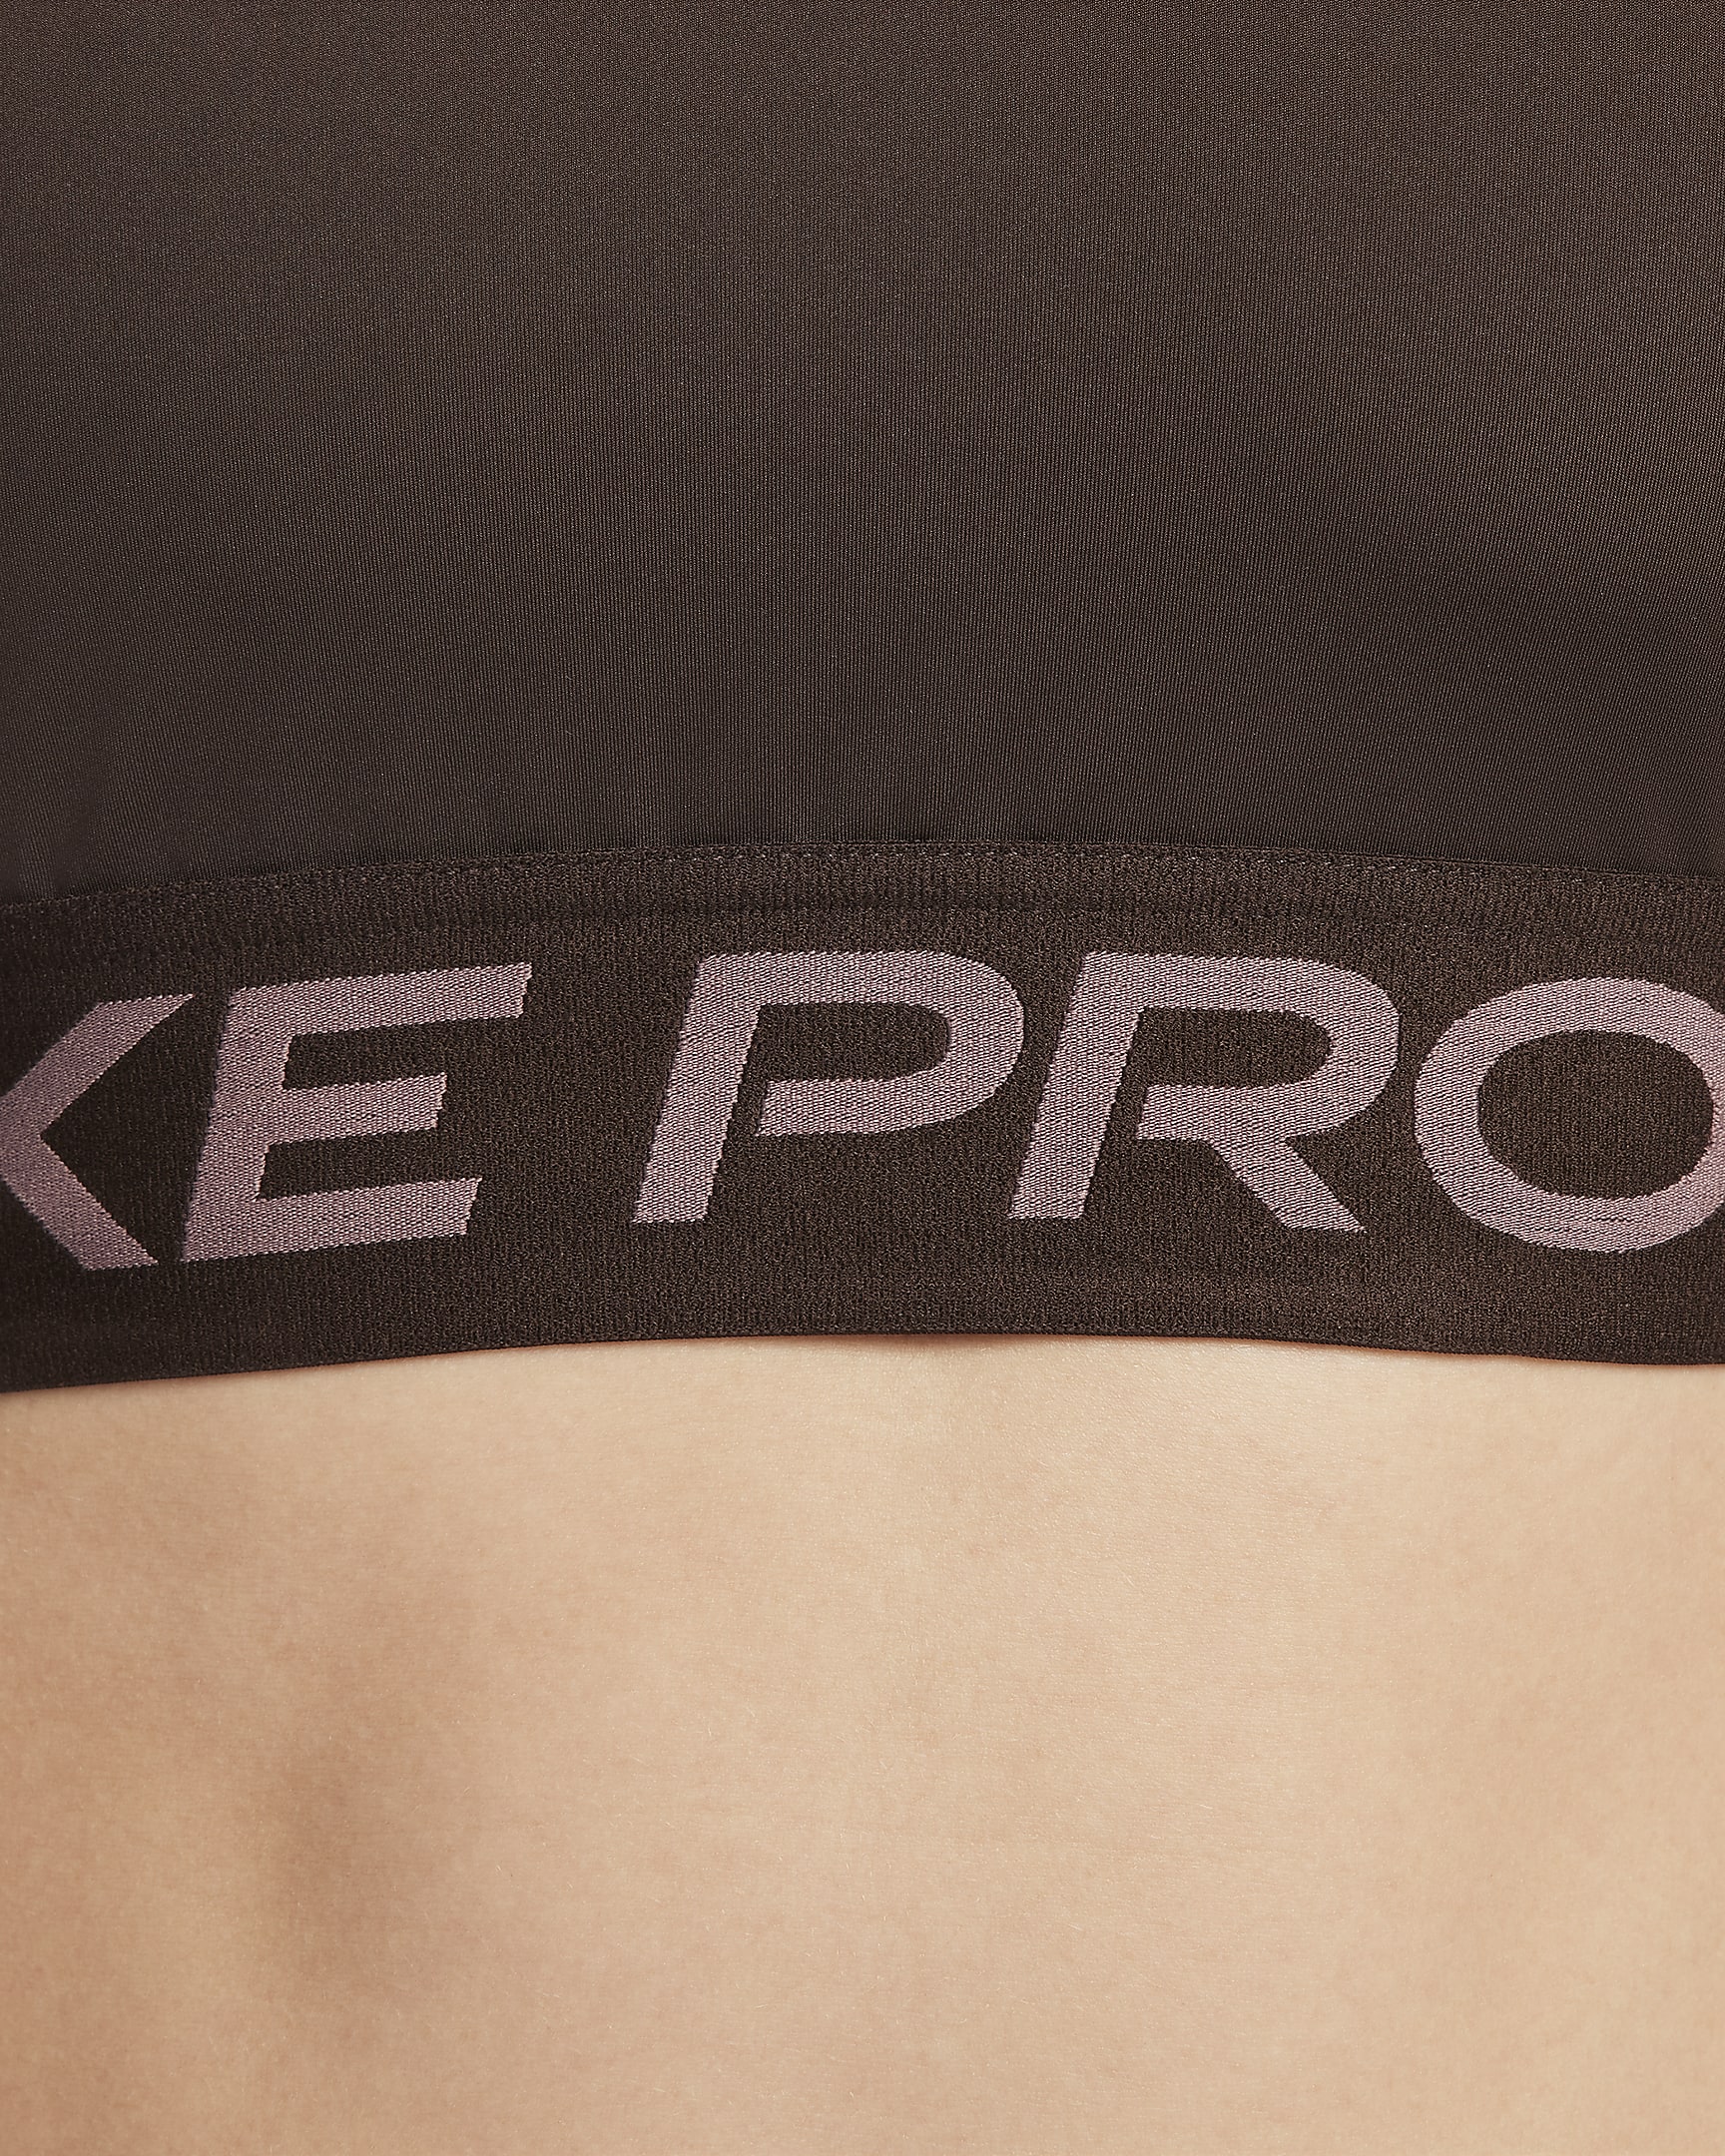 Camisola recortada de manga comprida Dri-FIT Nike Pro para mulher - Castanho Baroque/Branco